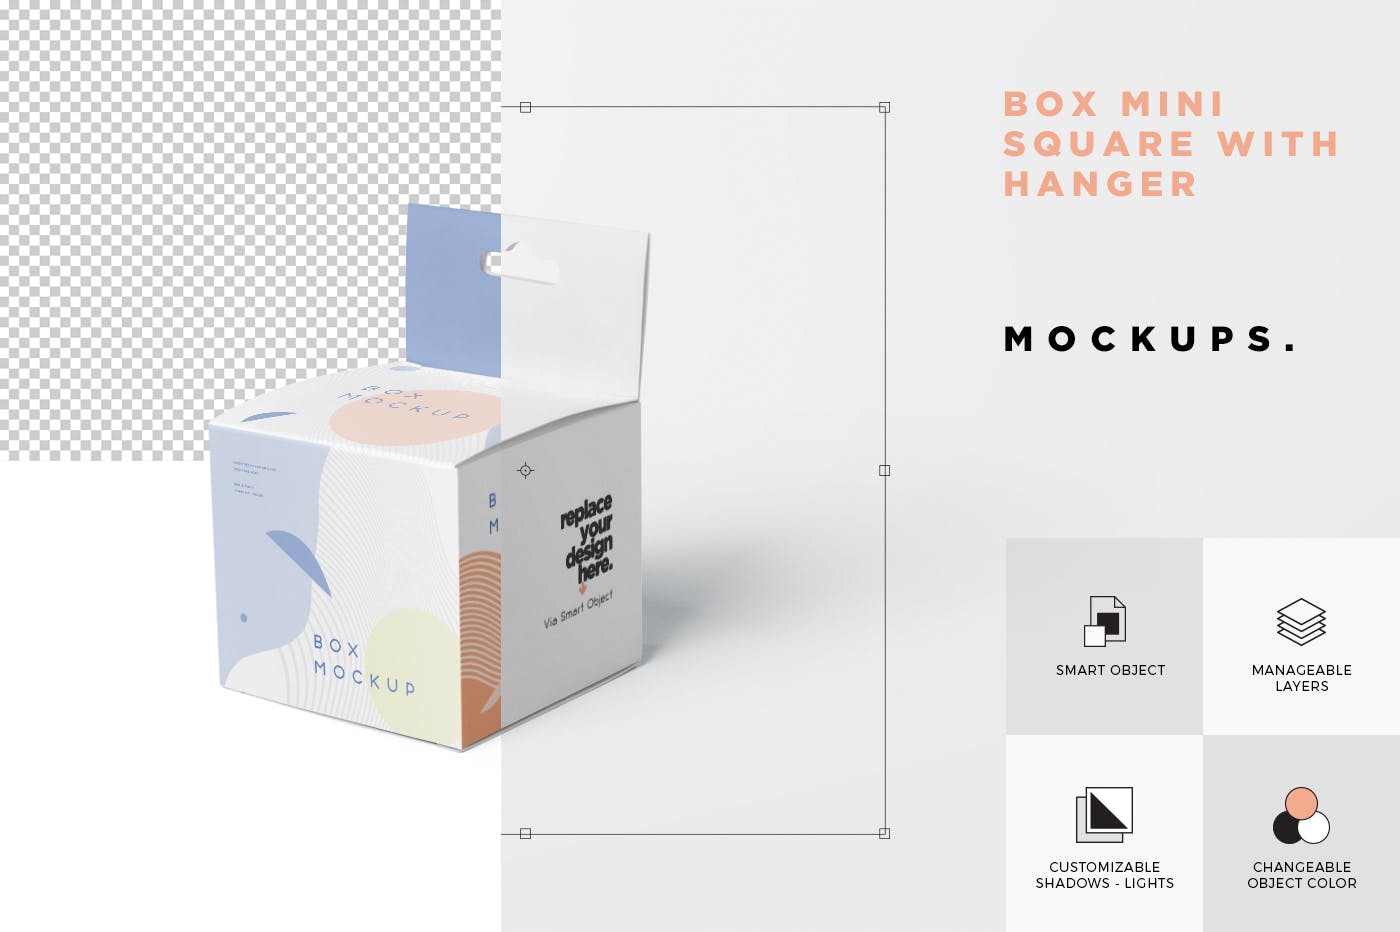 挂耳式迷你方形包装盒蚂蚁素材精选模板 Box Mockup Set – Mini Square with Hanger插图(6)